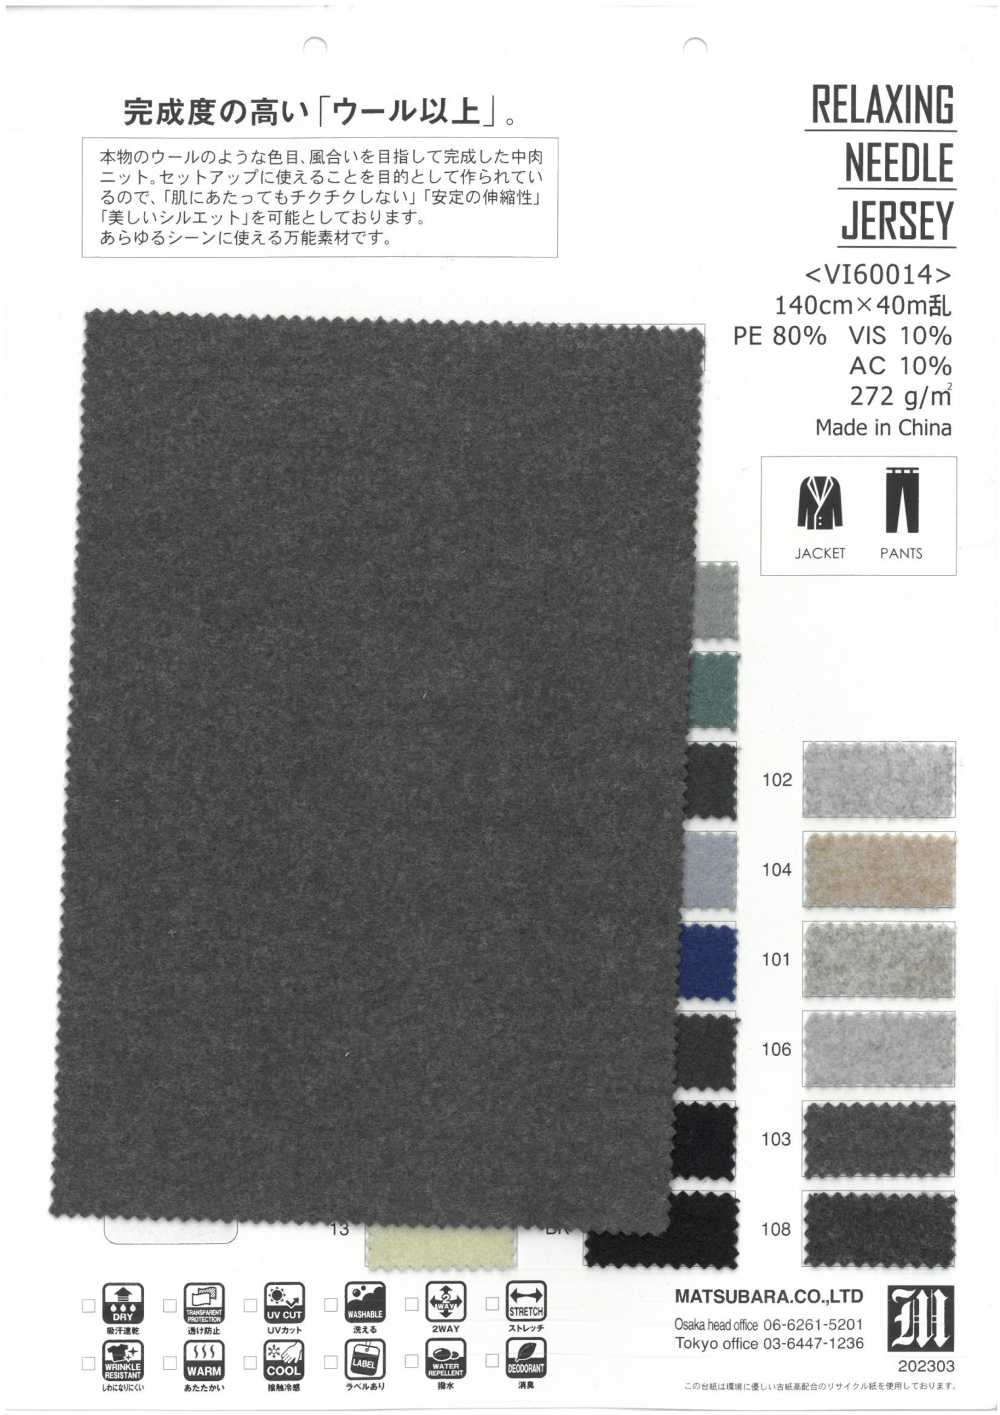 VI60014 JERSEY AIGUILLE RELAXANT[Fabrication De Textile] Matsubara